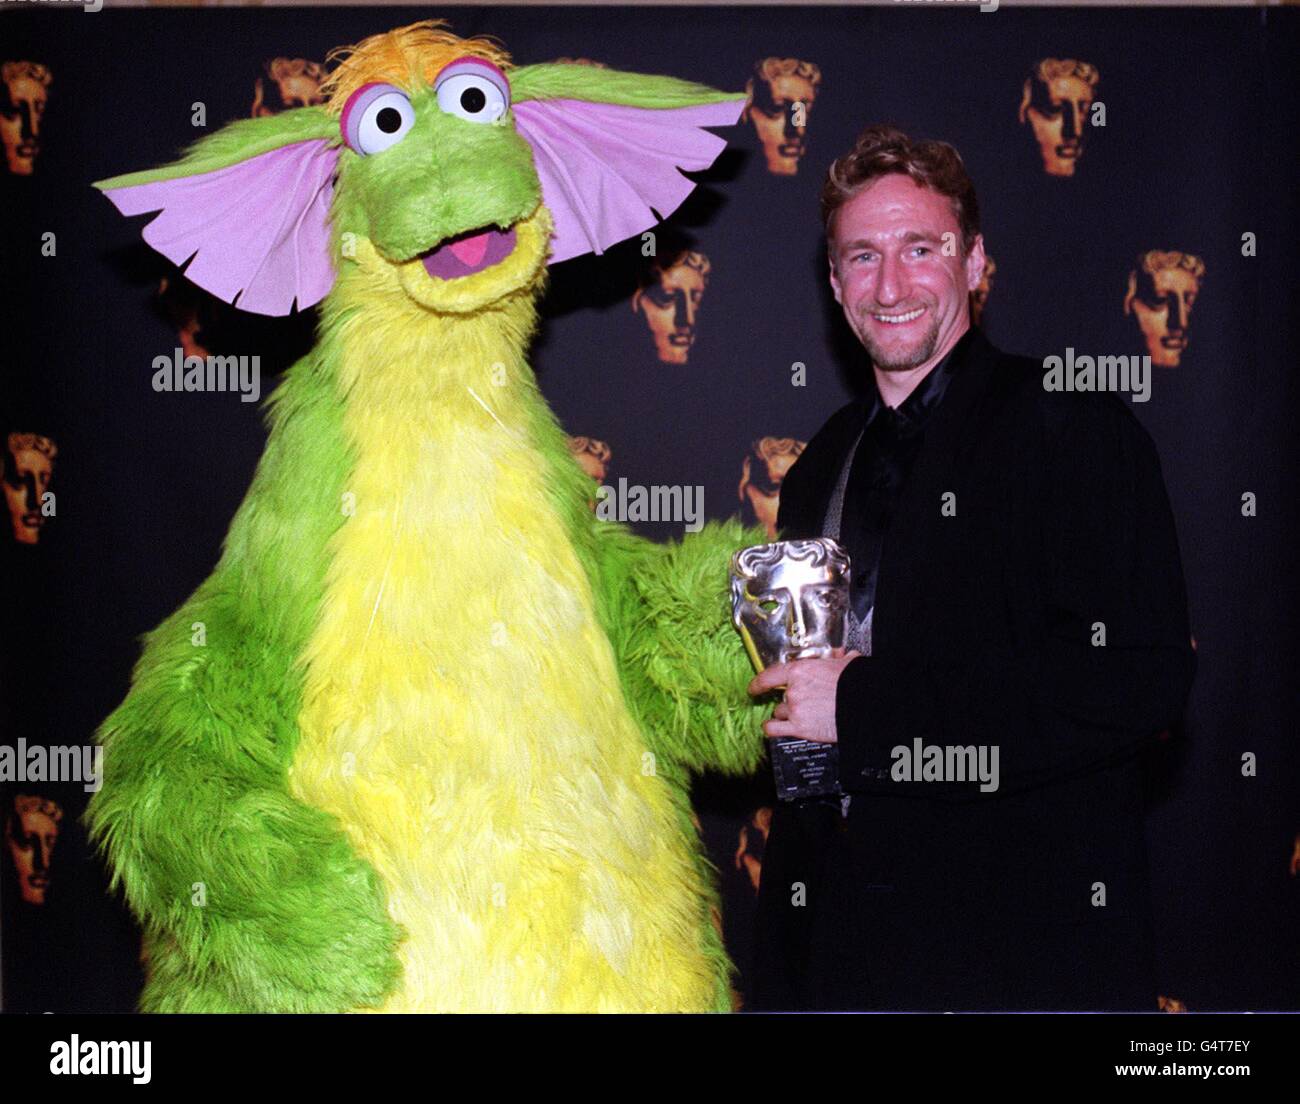 Brian Henson, capo della Jim Henson Company, i creatori dei Muppets ricevono il "Premio speciale" per il contributo straordinario a lungo termine alla televisione e al cinema per bambini durante il IV Premio per bambini della British Academy a Londra. Foto Stock